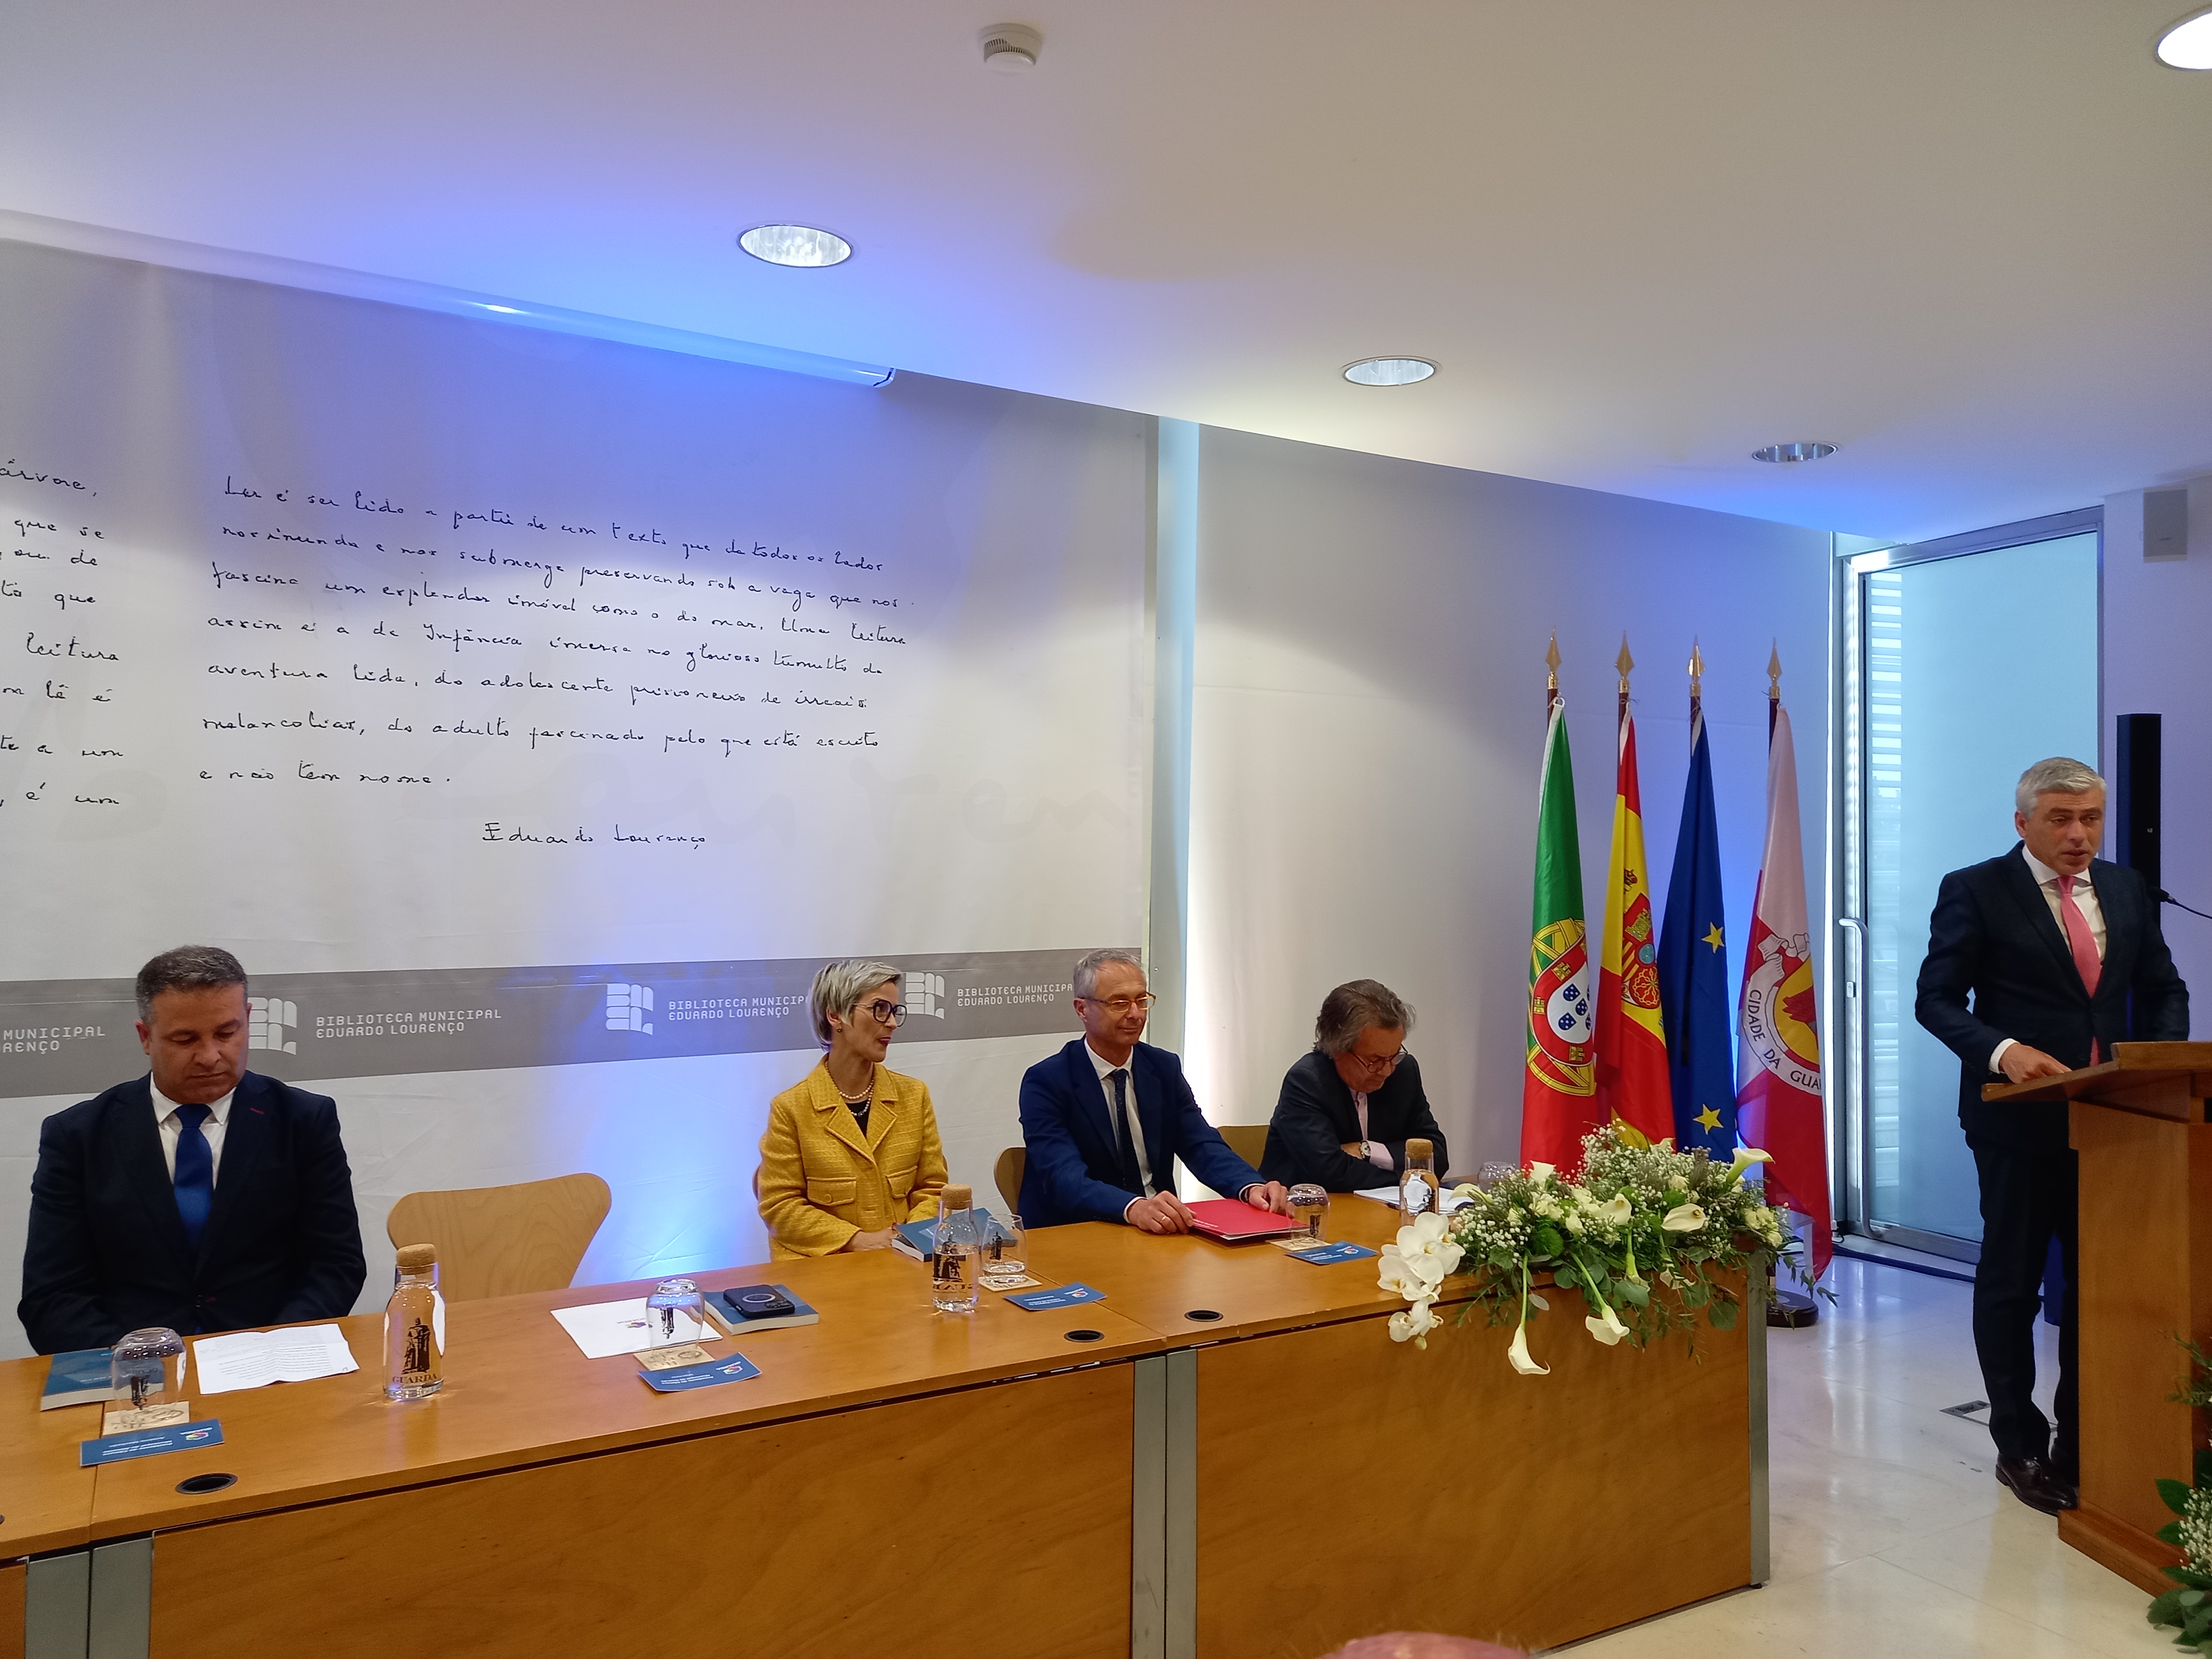 La Universidad de Salamanca se suma a los actos por el centenario de Eduardo Lourenço